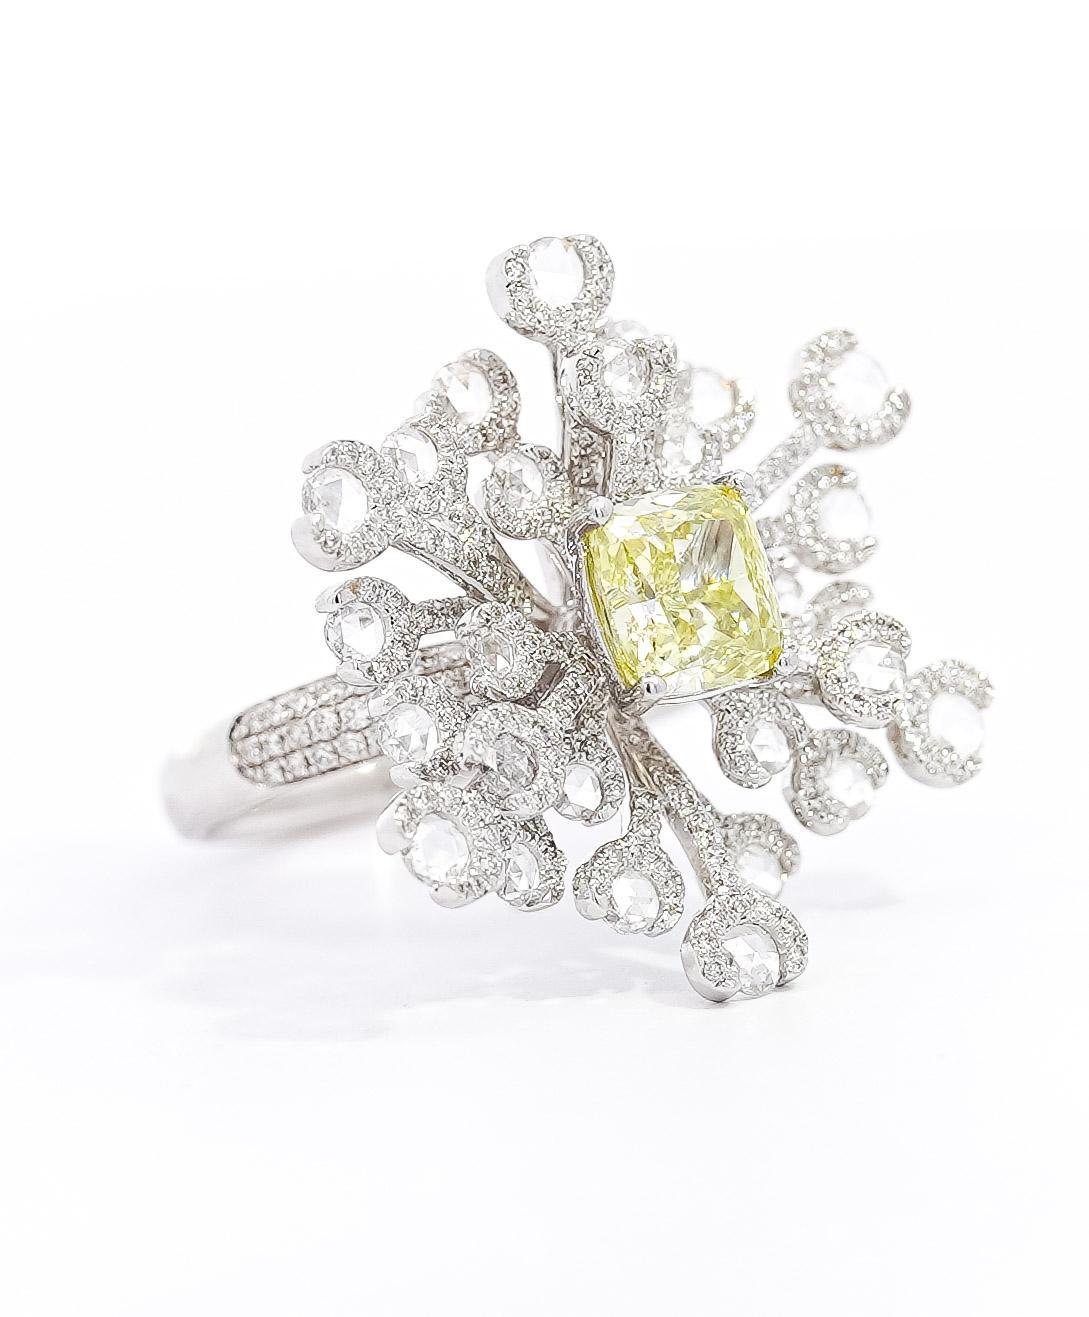 GIA zertifiziert 1,52 Karat Kissenschliff Fancy grünlich gelben Diamanten und Briolette Diamant Seite Stein SnowFlake Motiv Ring in 18K Weißgold. 

Der Mittelstein weist eine hervorragende Farbverteilung und Sättigung auf und ist perfekt